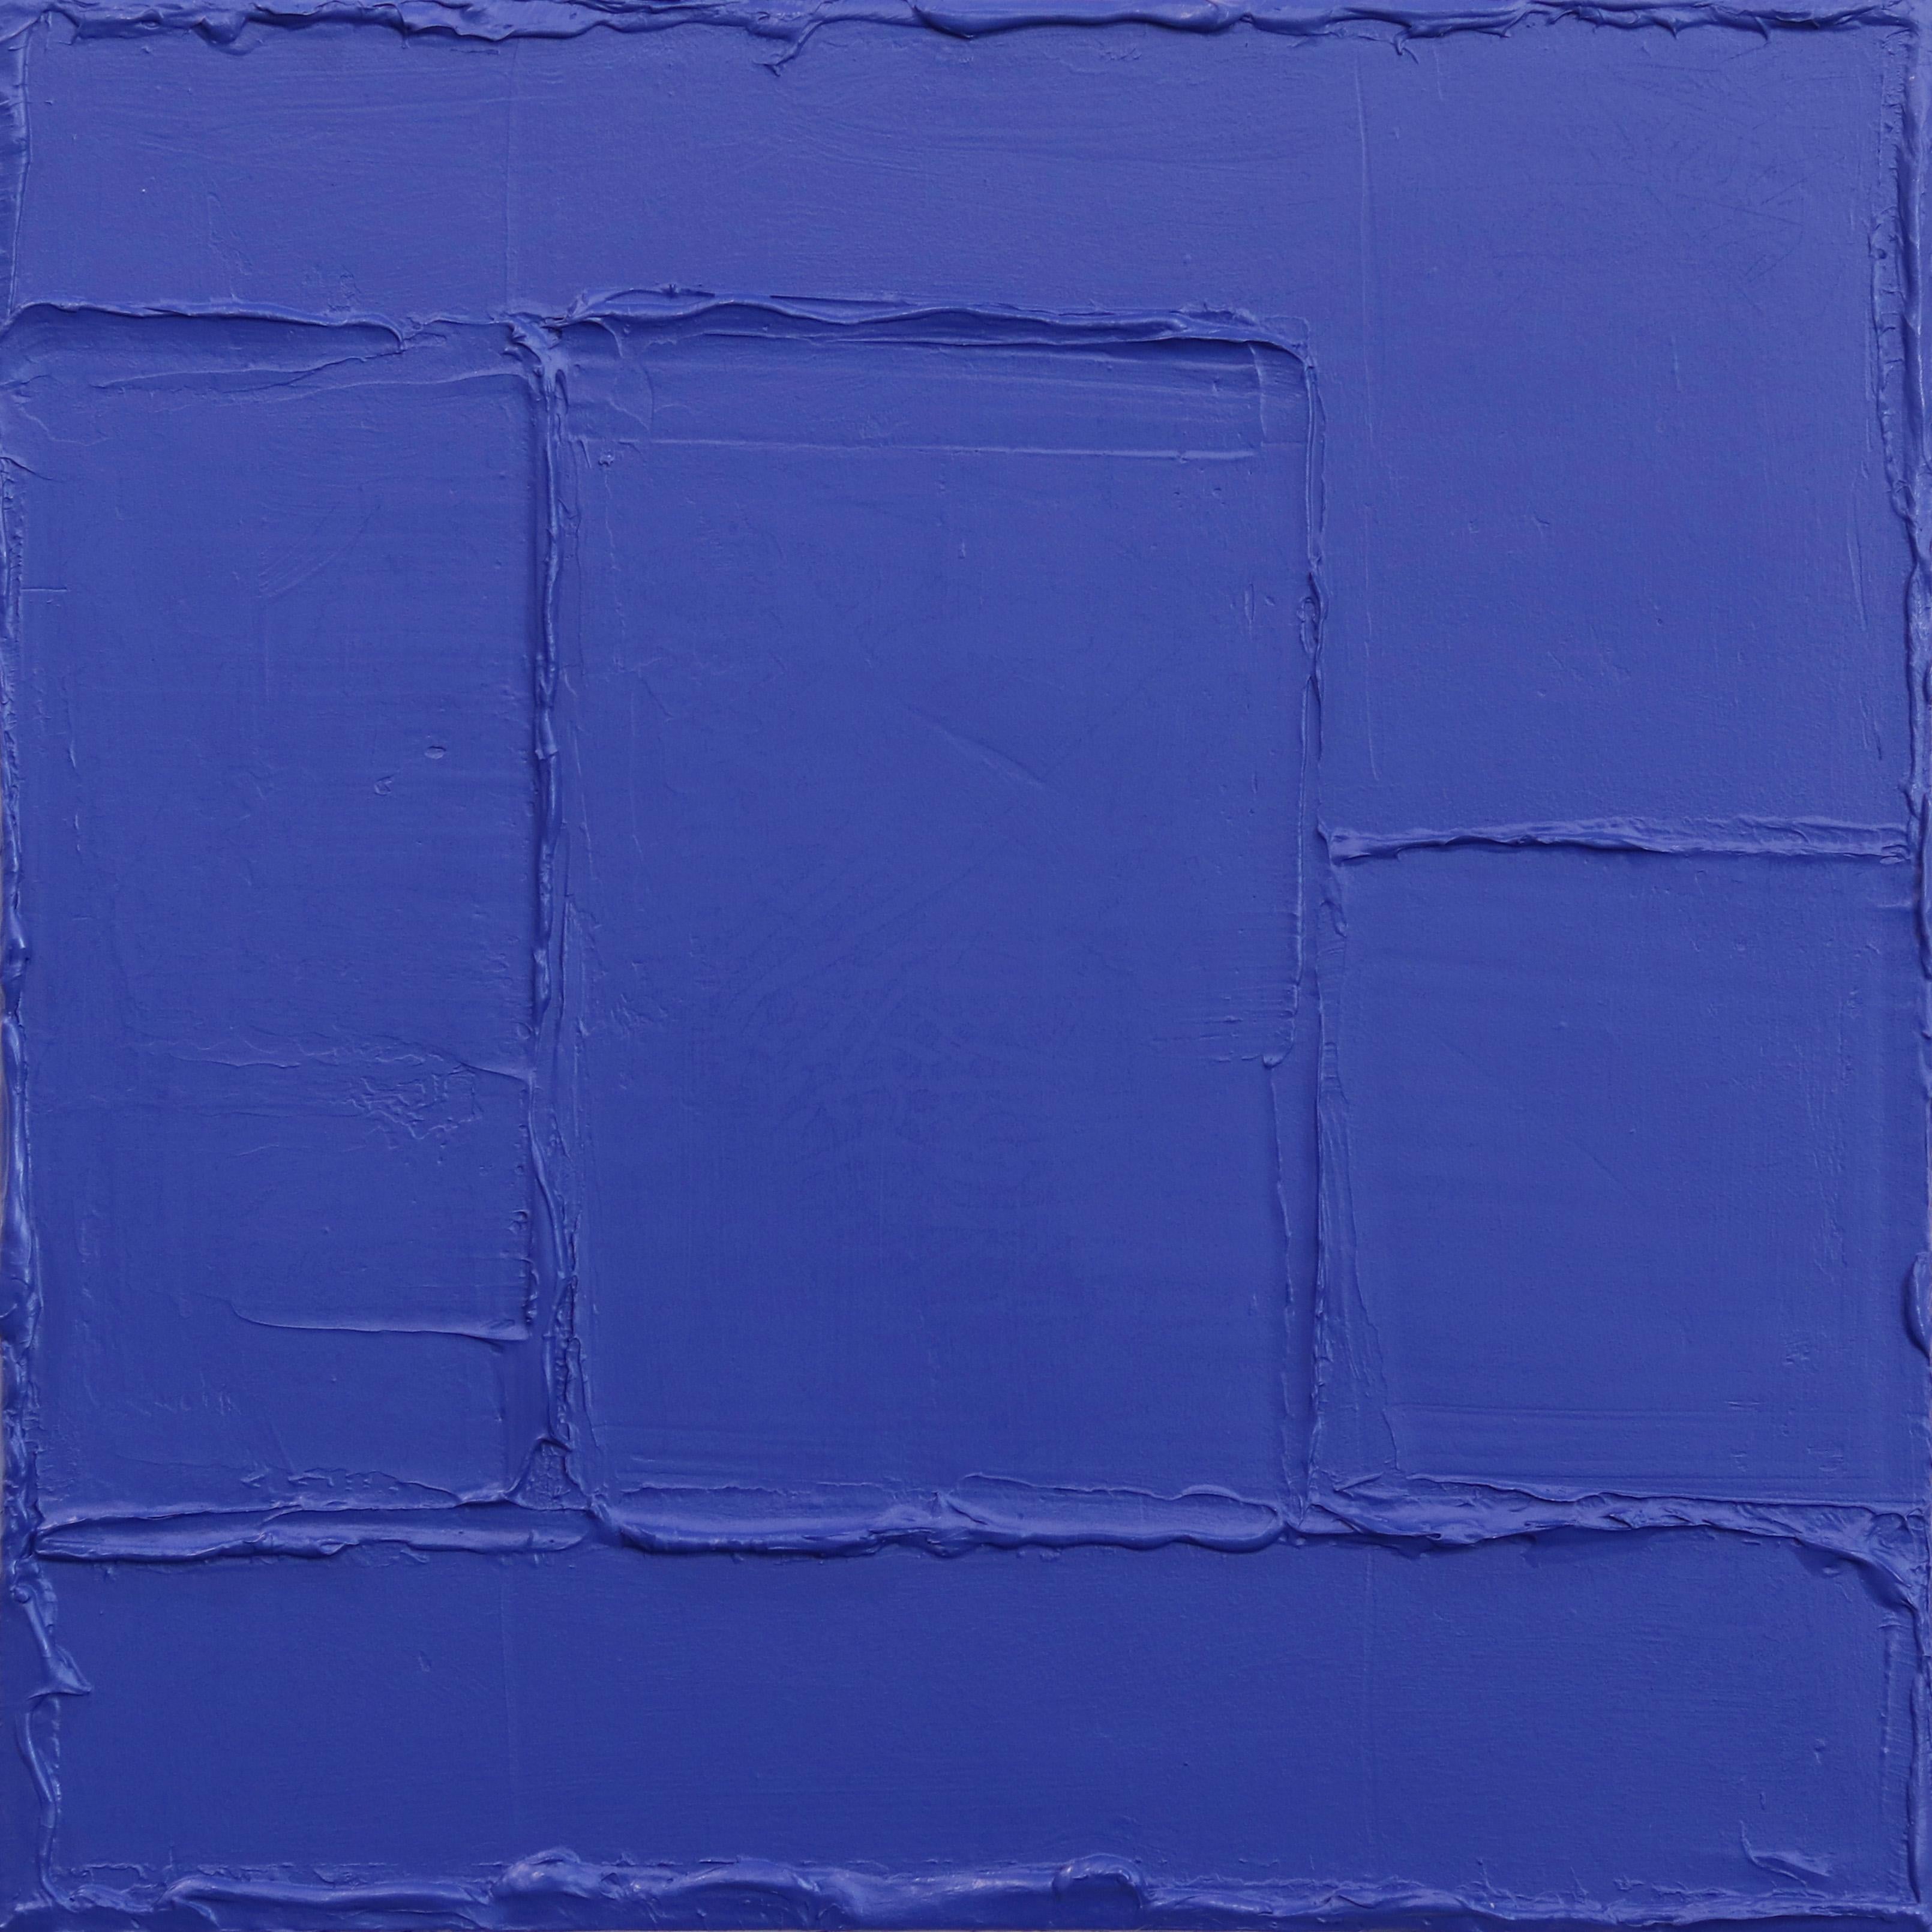 Saphir - Blaues strukturiertes abstraktes minimalistisches Kunstwerk auf Leinwand